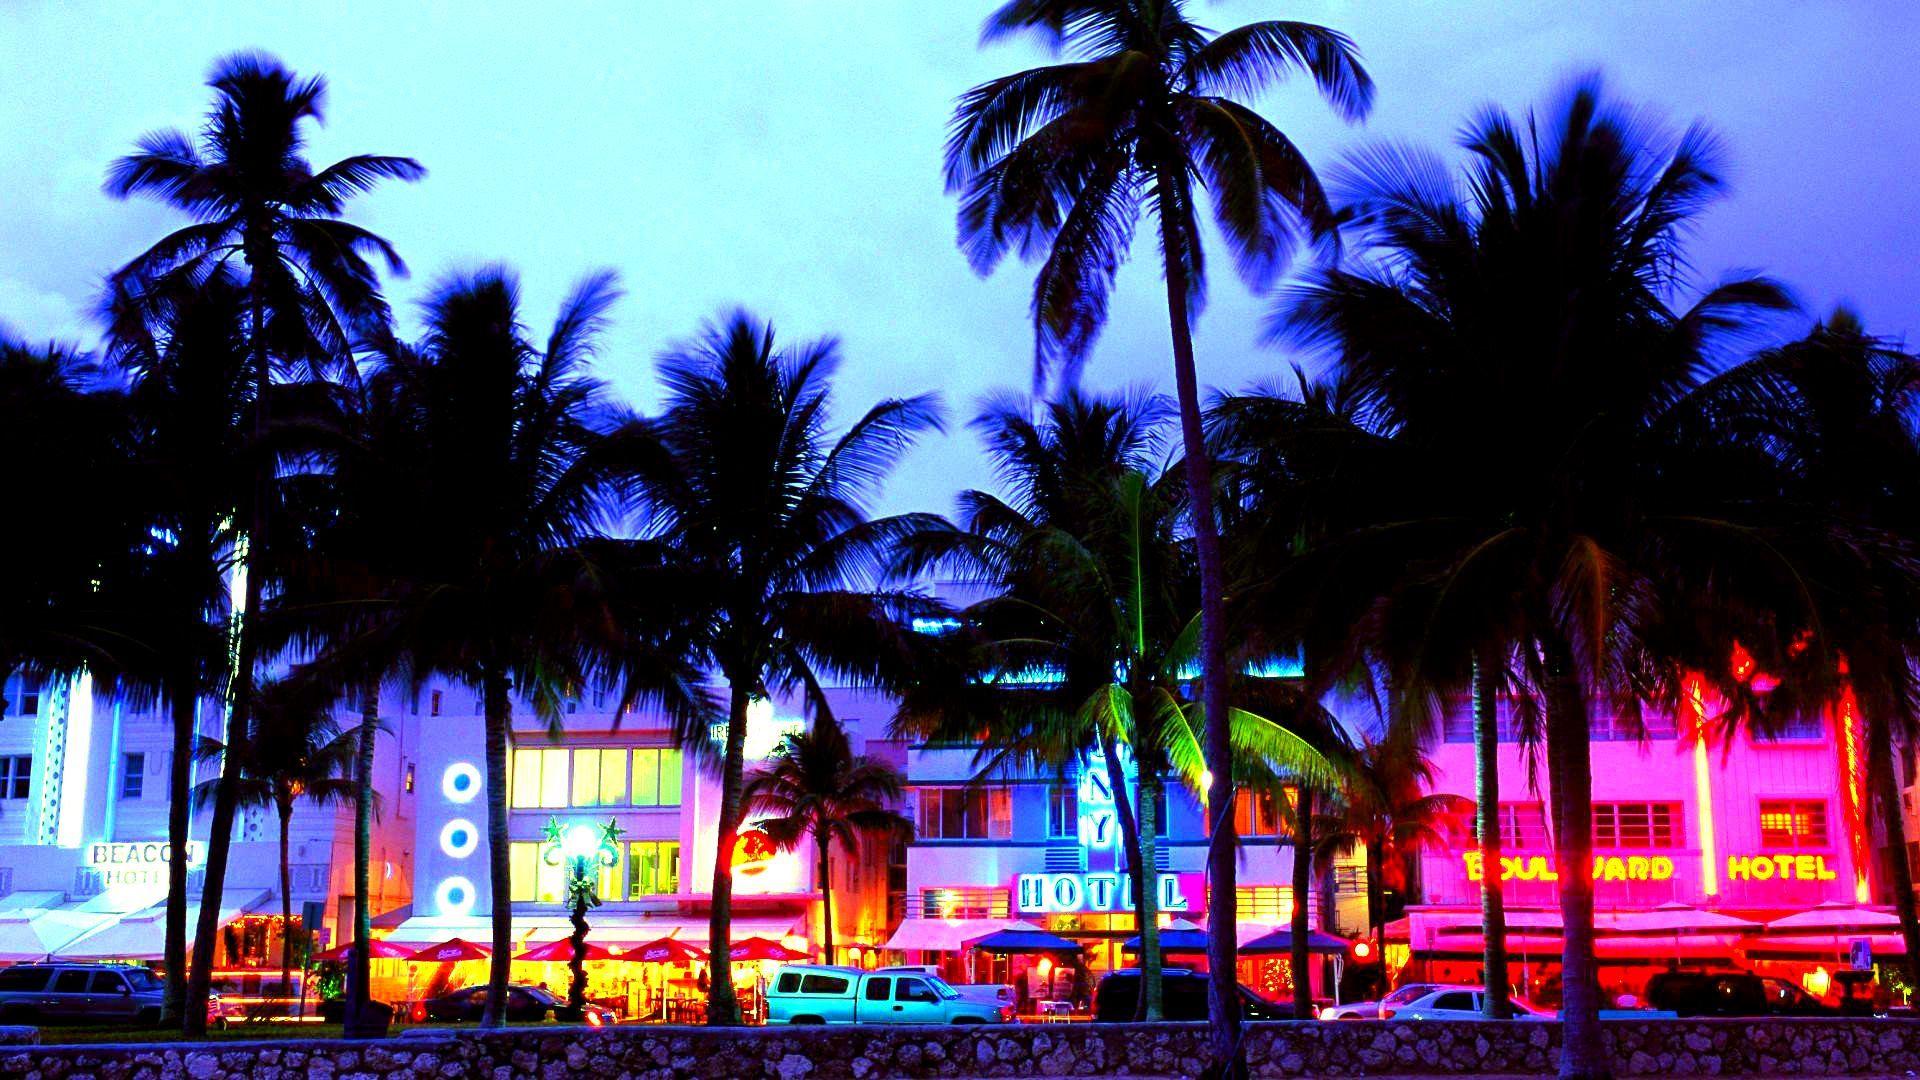 Miami Vice Wallpaper Free Miami Vice Background